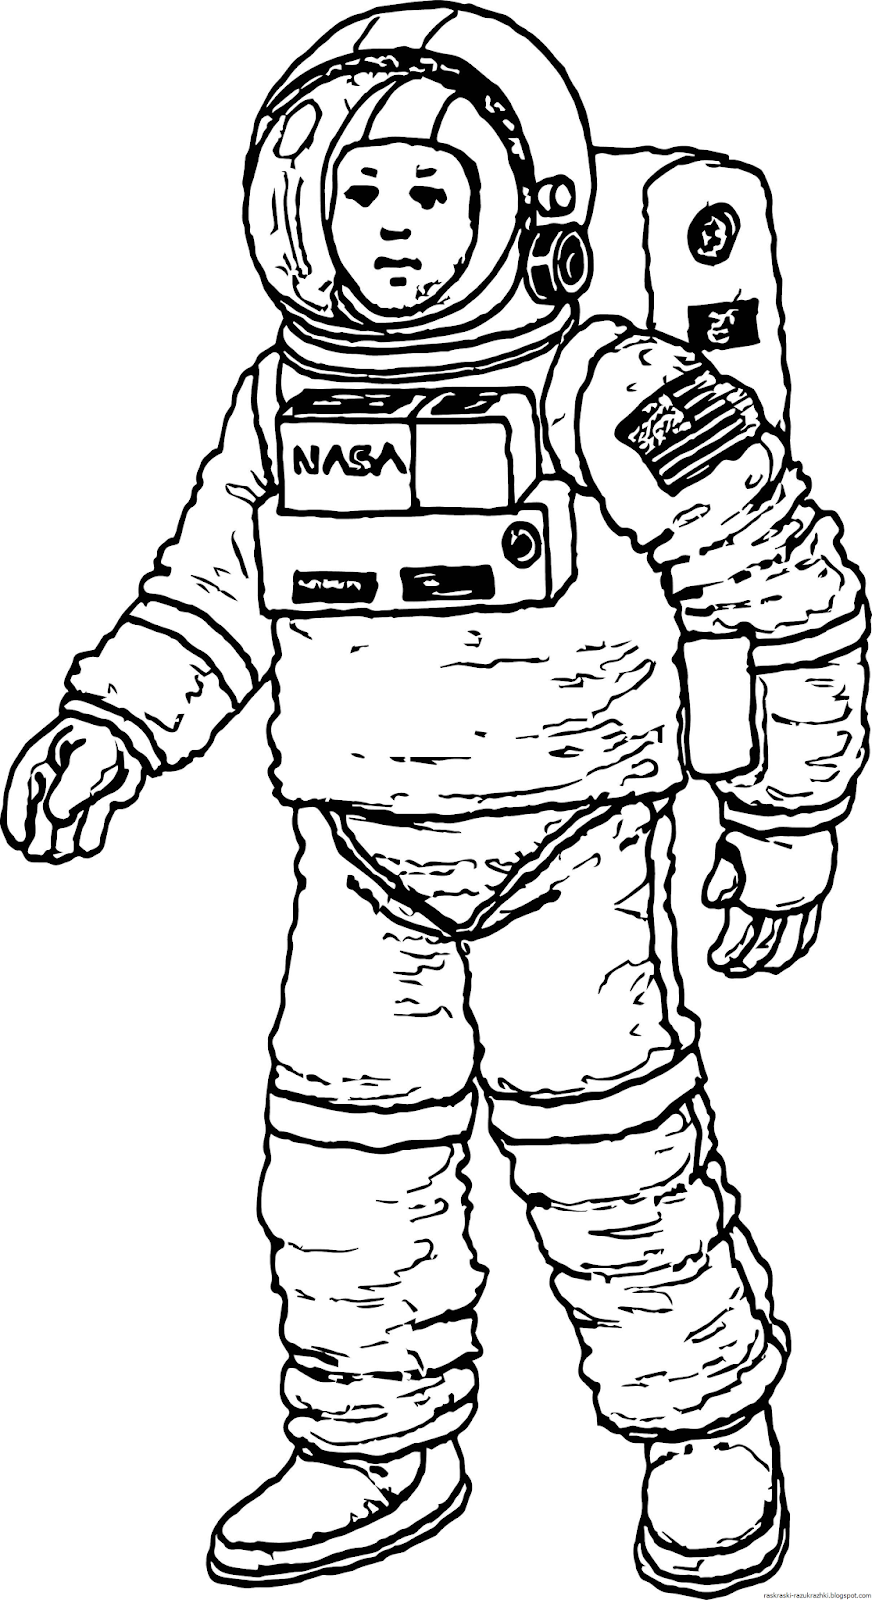 Космонавт шаблон для вырезания распечатать. Космонавт раскраска для детей. Раскраска про космос и Космонавтов для детей. Космонавт рисунок. Рисунок Космонавта в скафандре для детей.